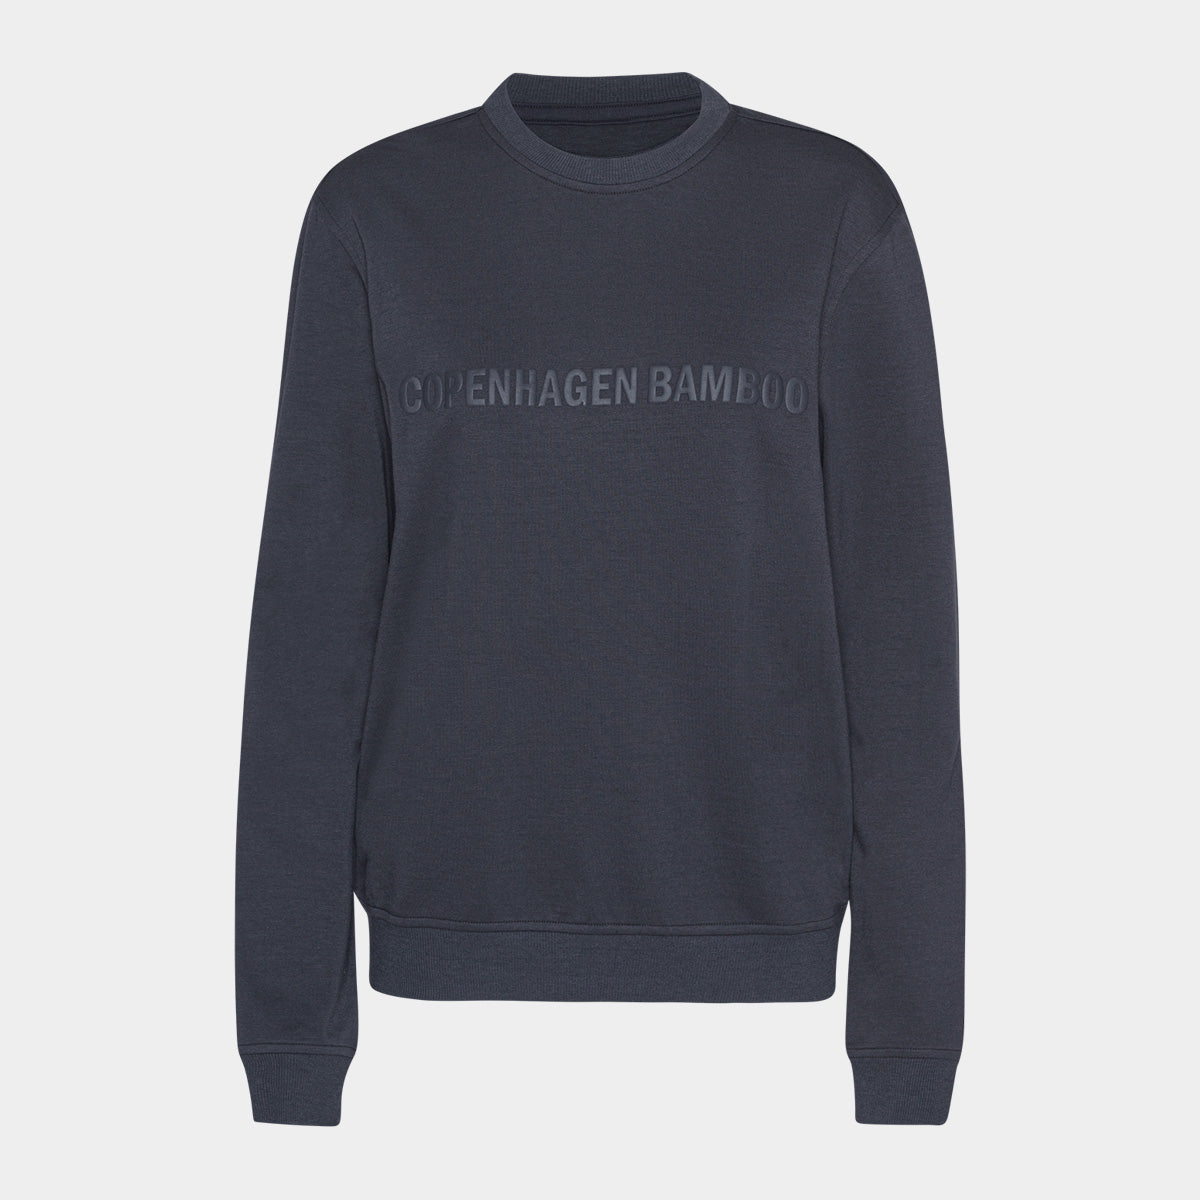 Se Mørkegrå bambus sweatshirt til dame med logo fra Copenhagen Bamboo, XS hos Bambustøj.dk